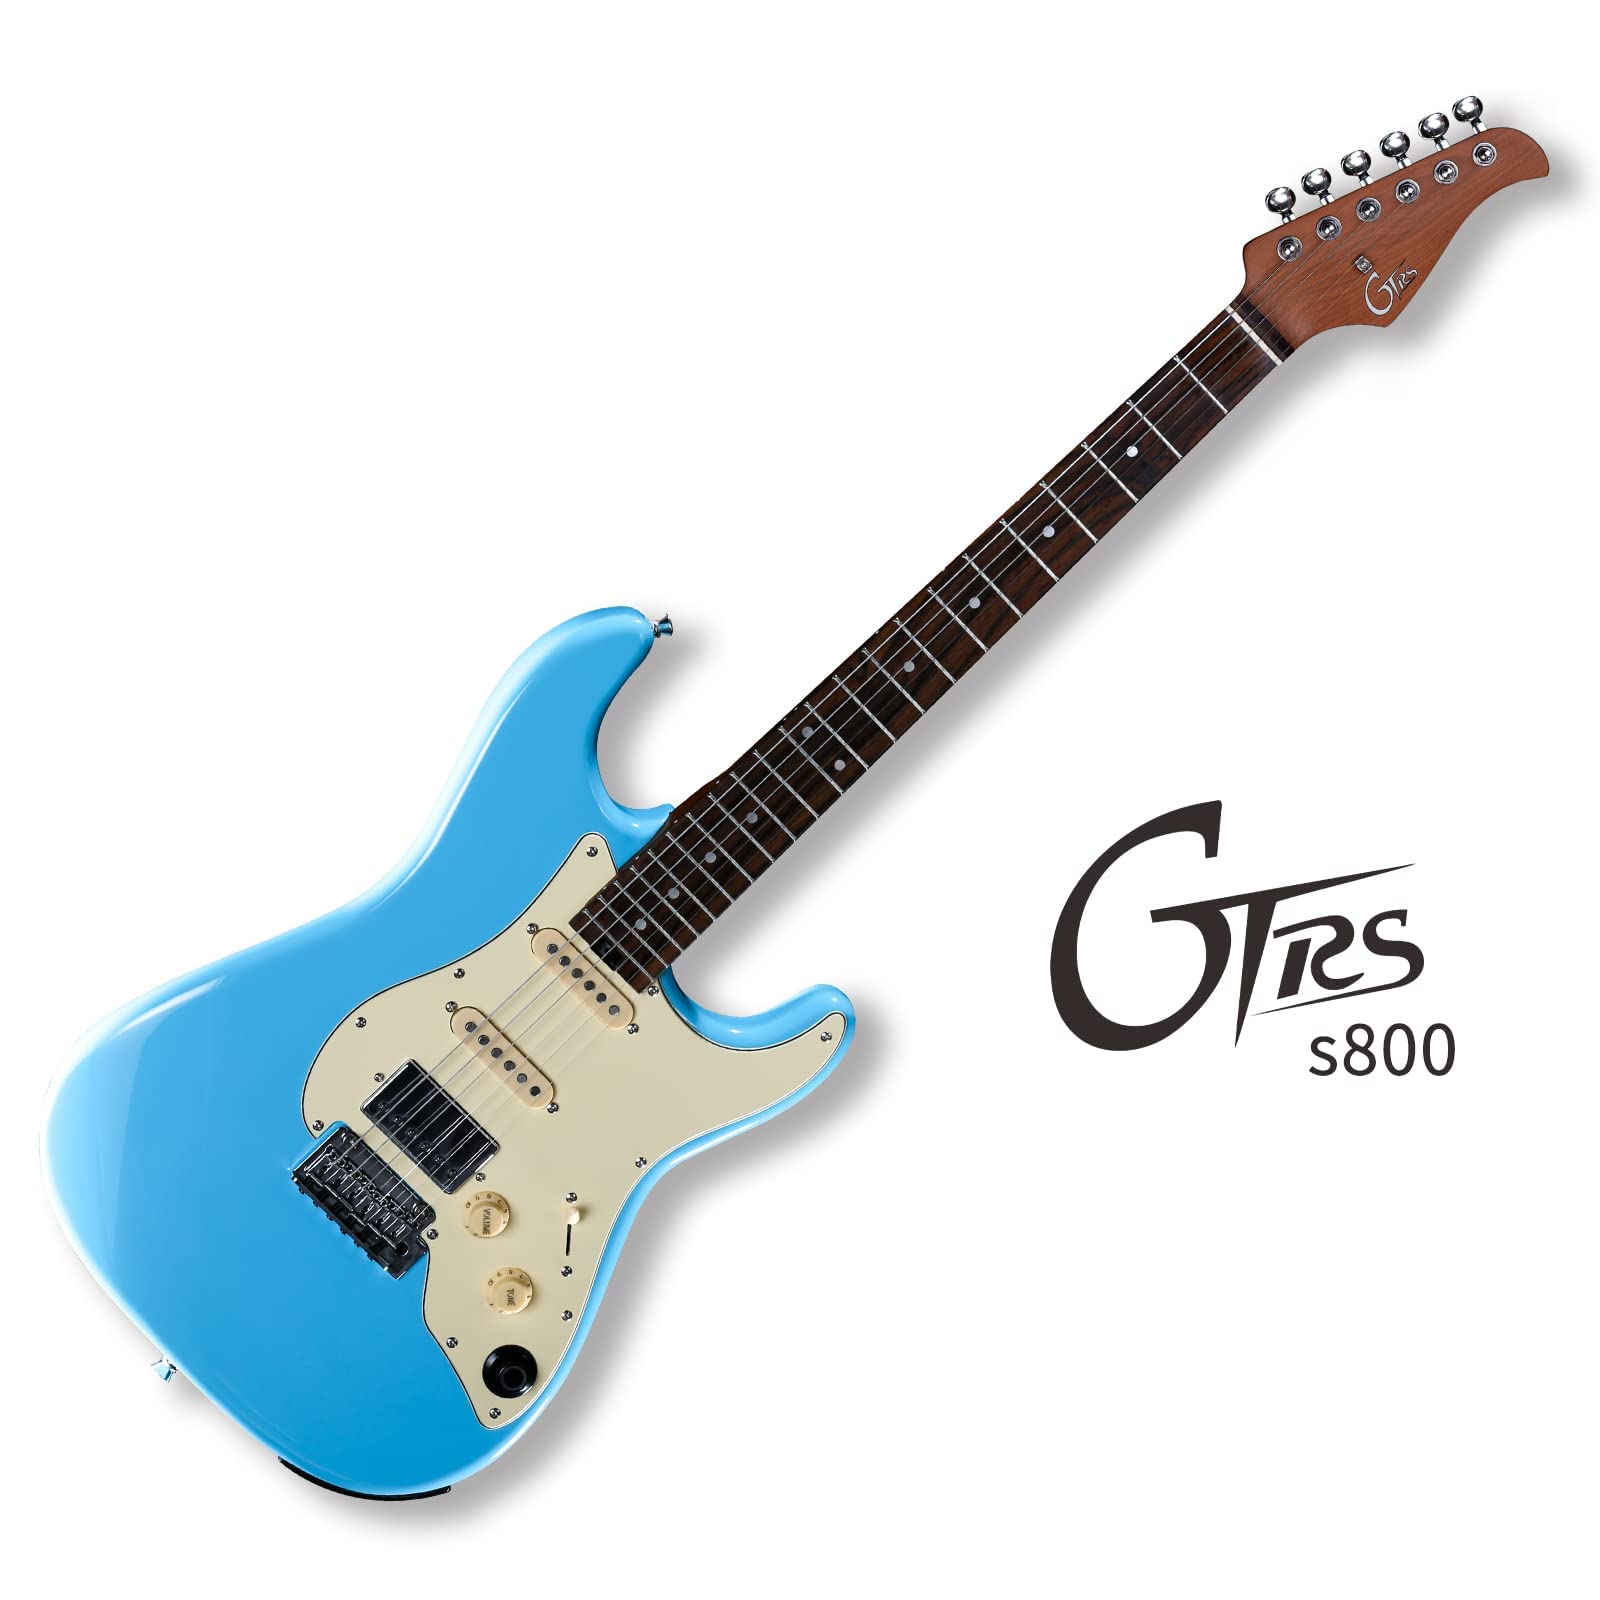 Đàn Guitar Điện Mooer GTRS S800 Sonic Blue - Việt Music